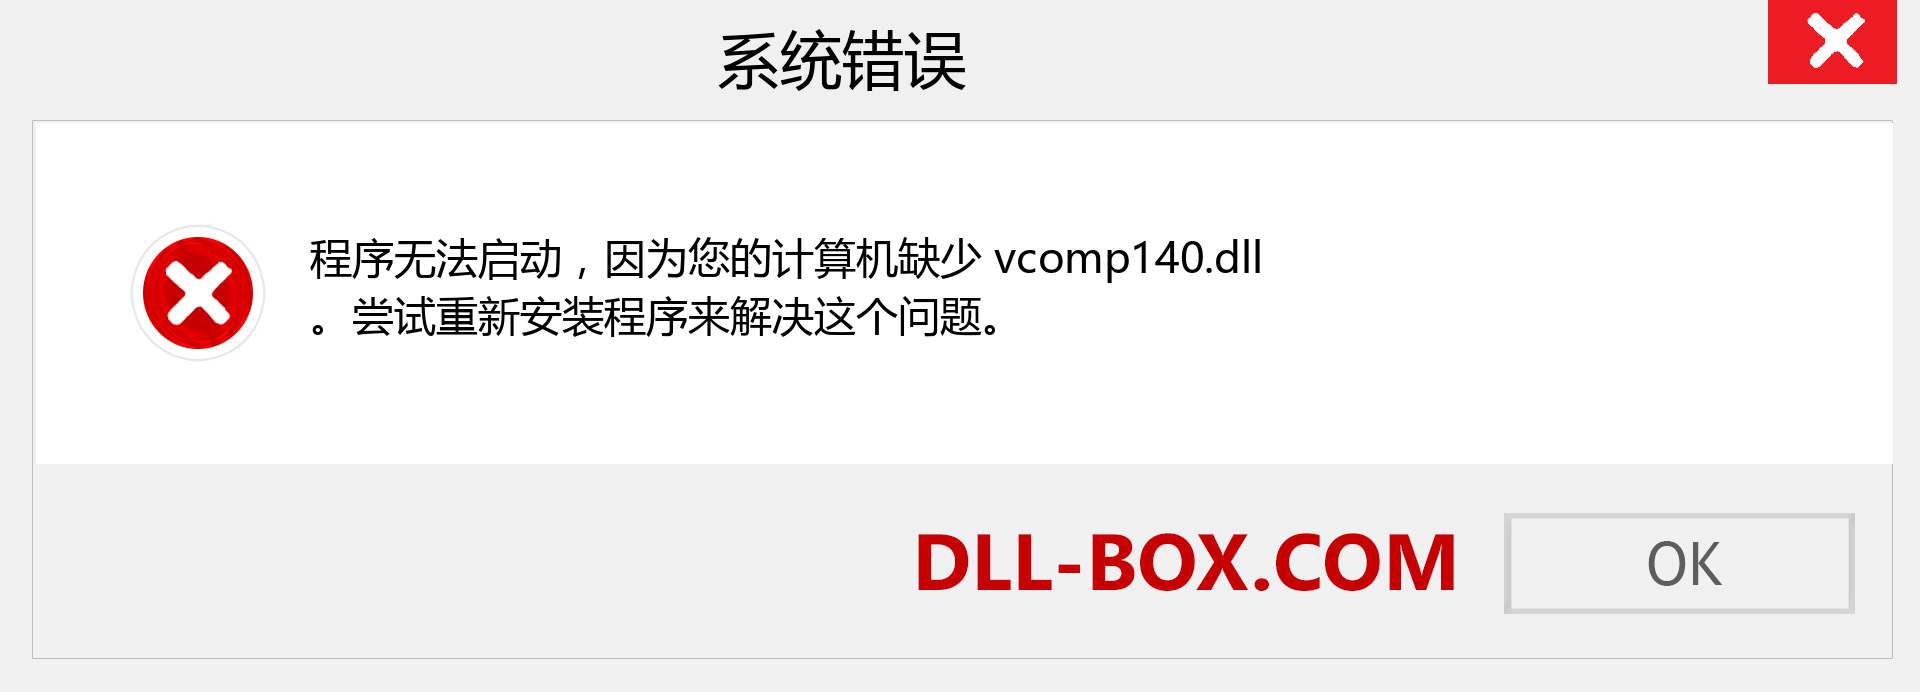 vcomp140.dll 文件丢失？。 适用于 Windows 7、8、10 的下载 - 修复 Windows、照片、图像上的 vcomp140 dll 丢失错误